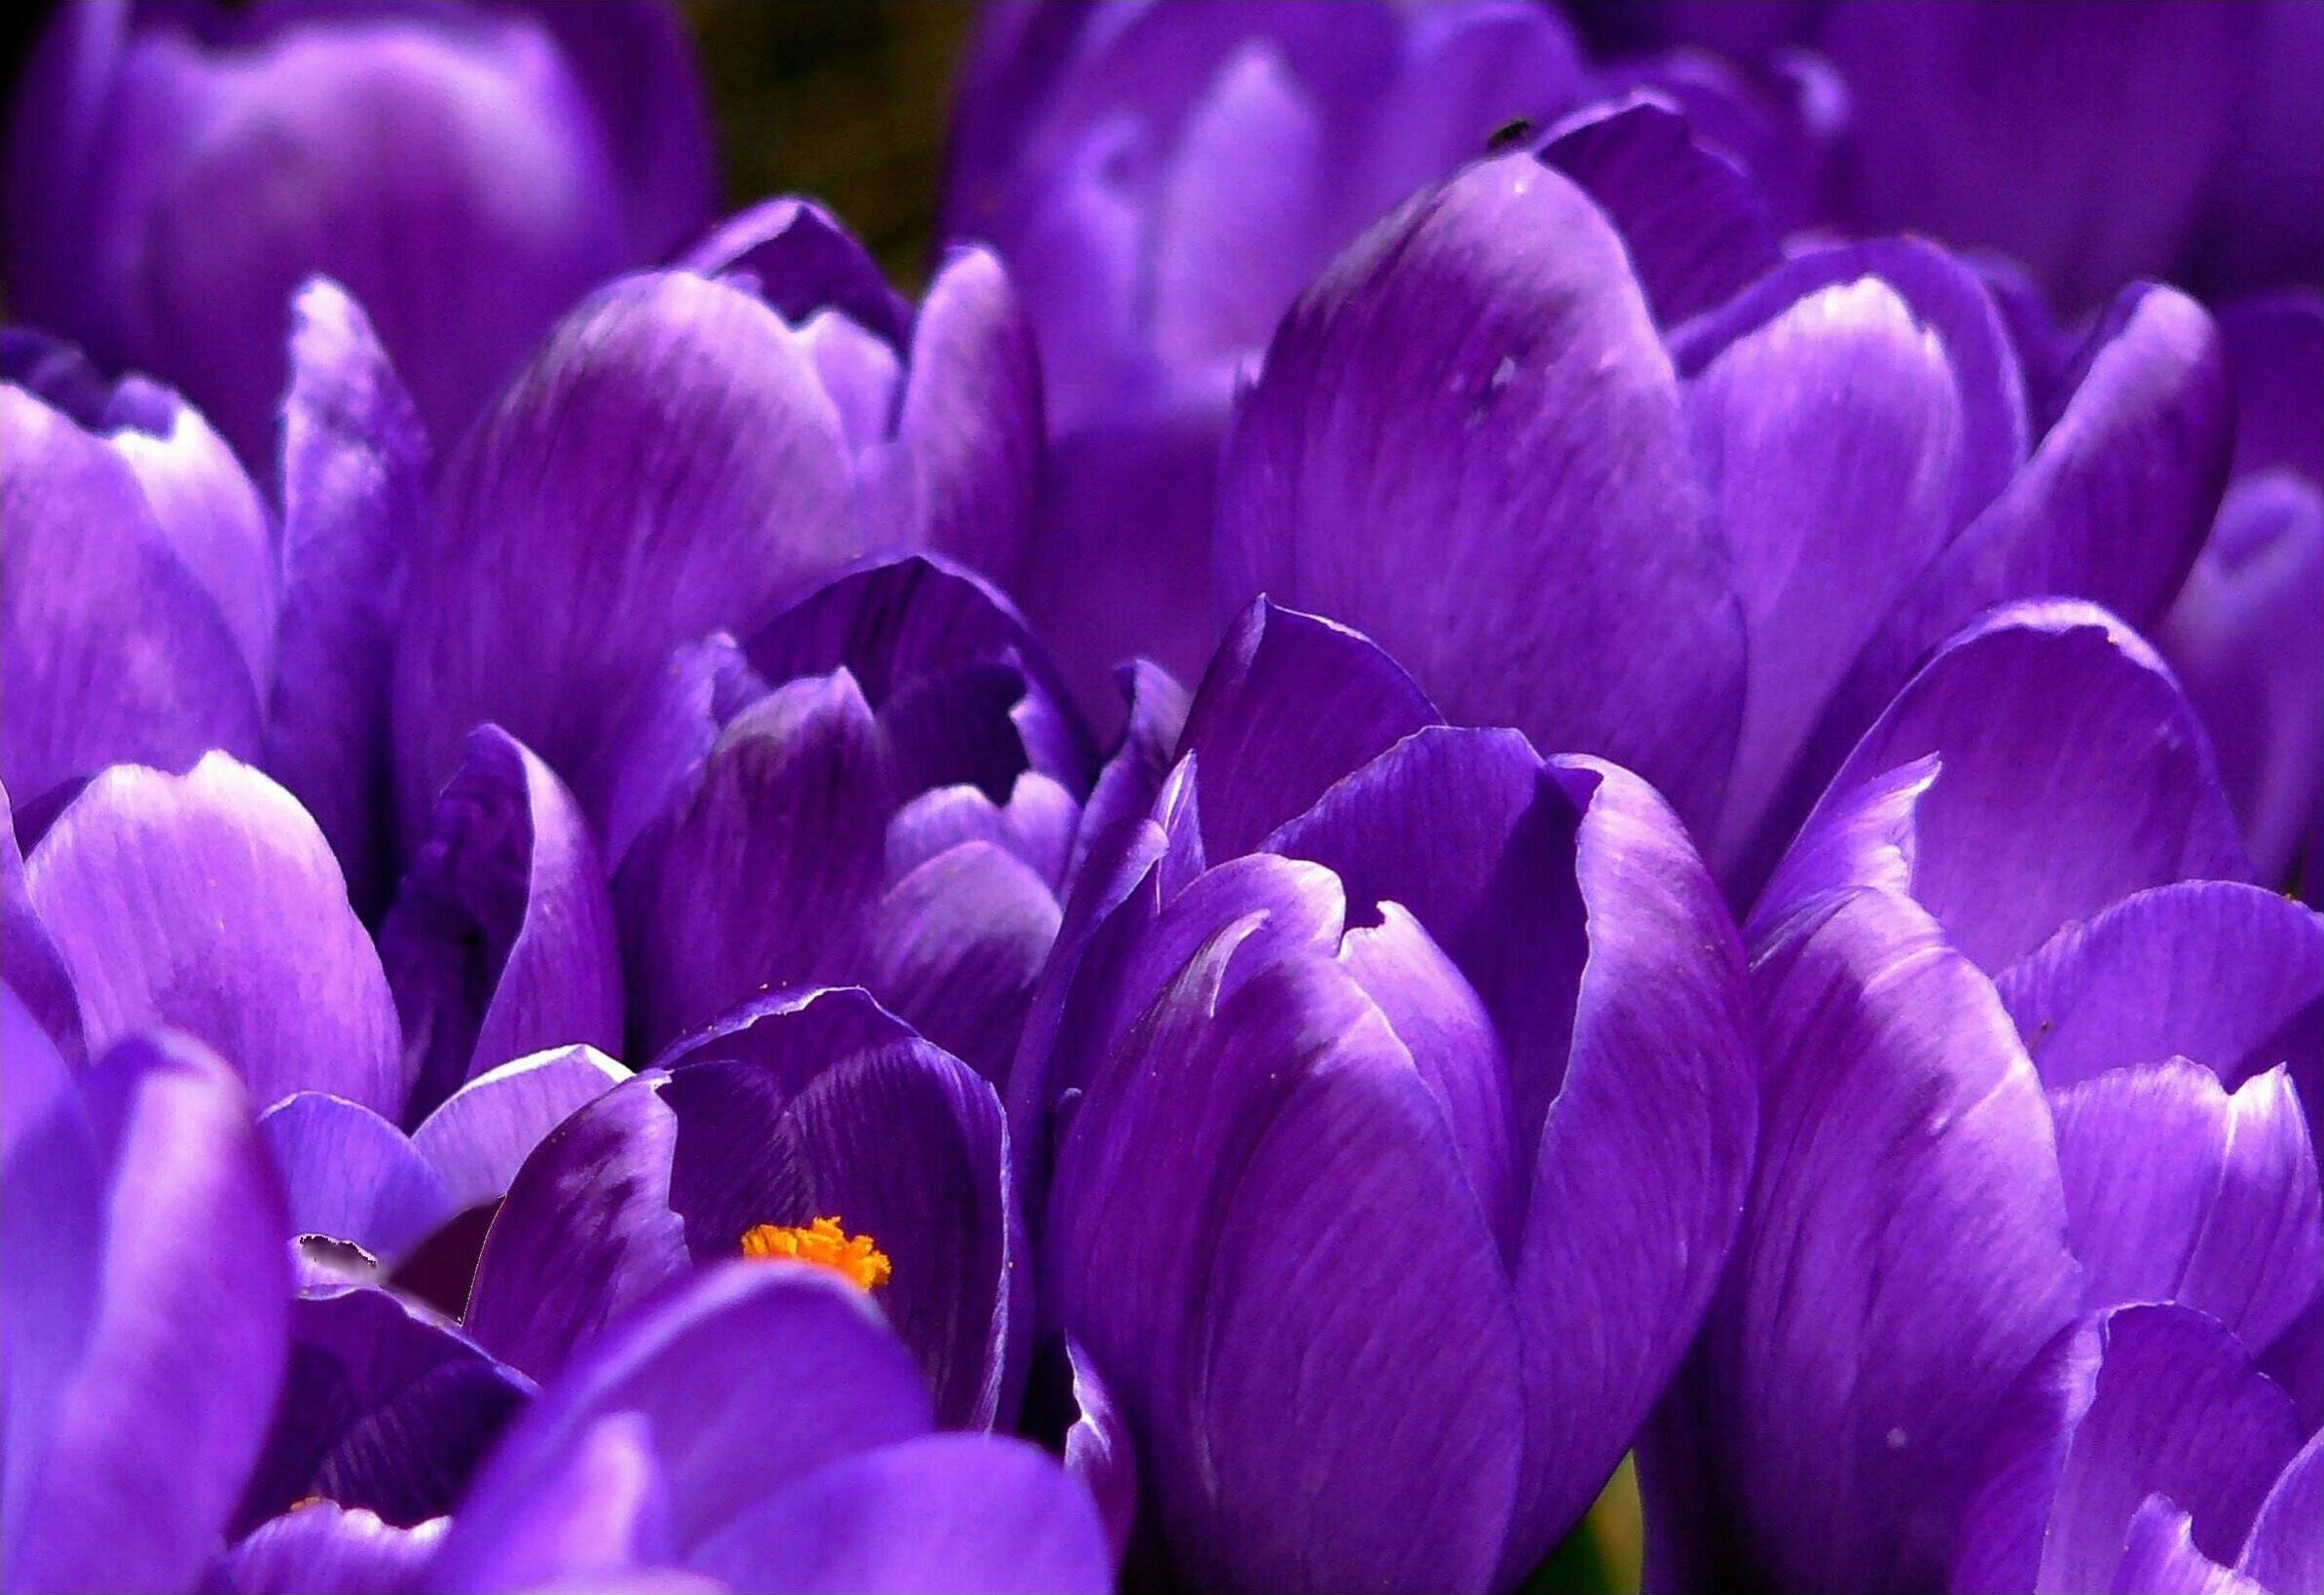 Best Purple Flowers Photo · 100% Free Downloads